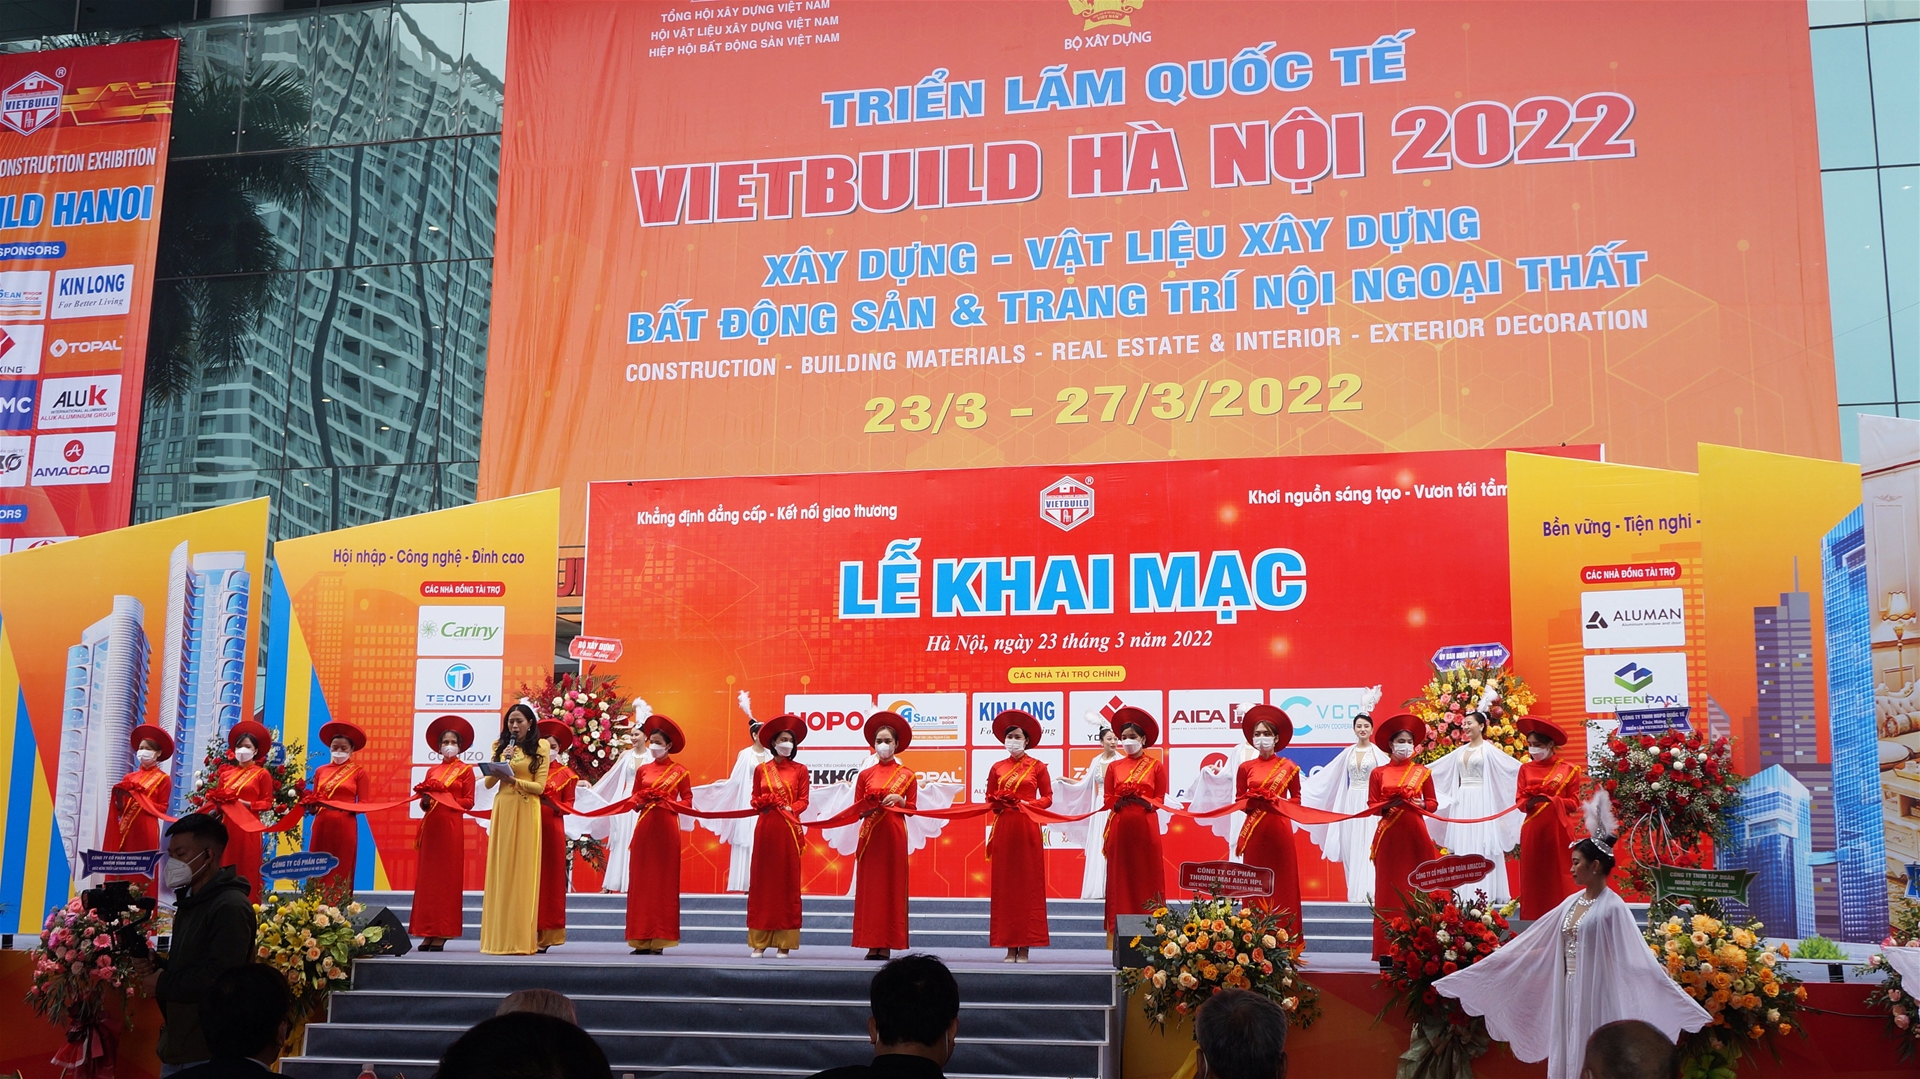 Lễ khai mạc Triển lãm Quốc tế Vietbuild Hà Nội 2022